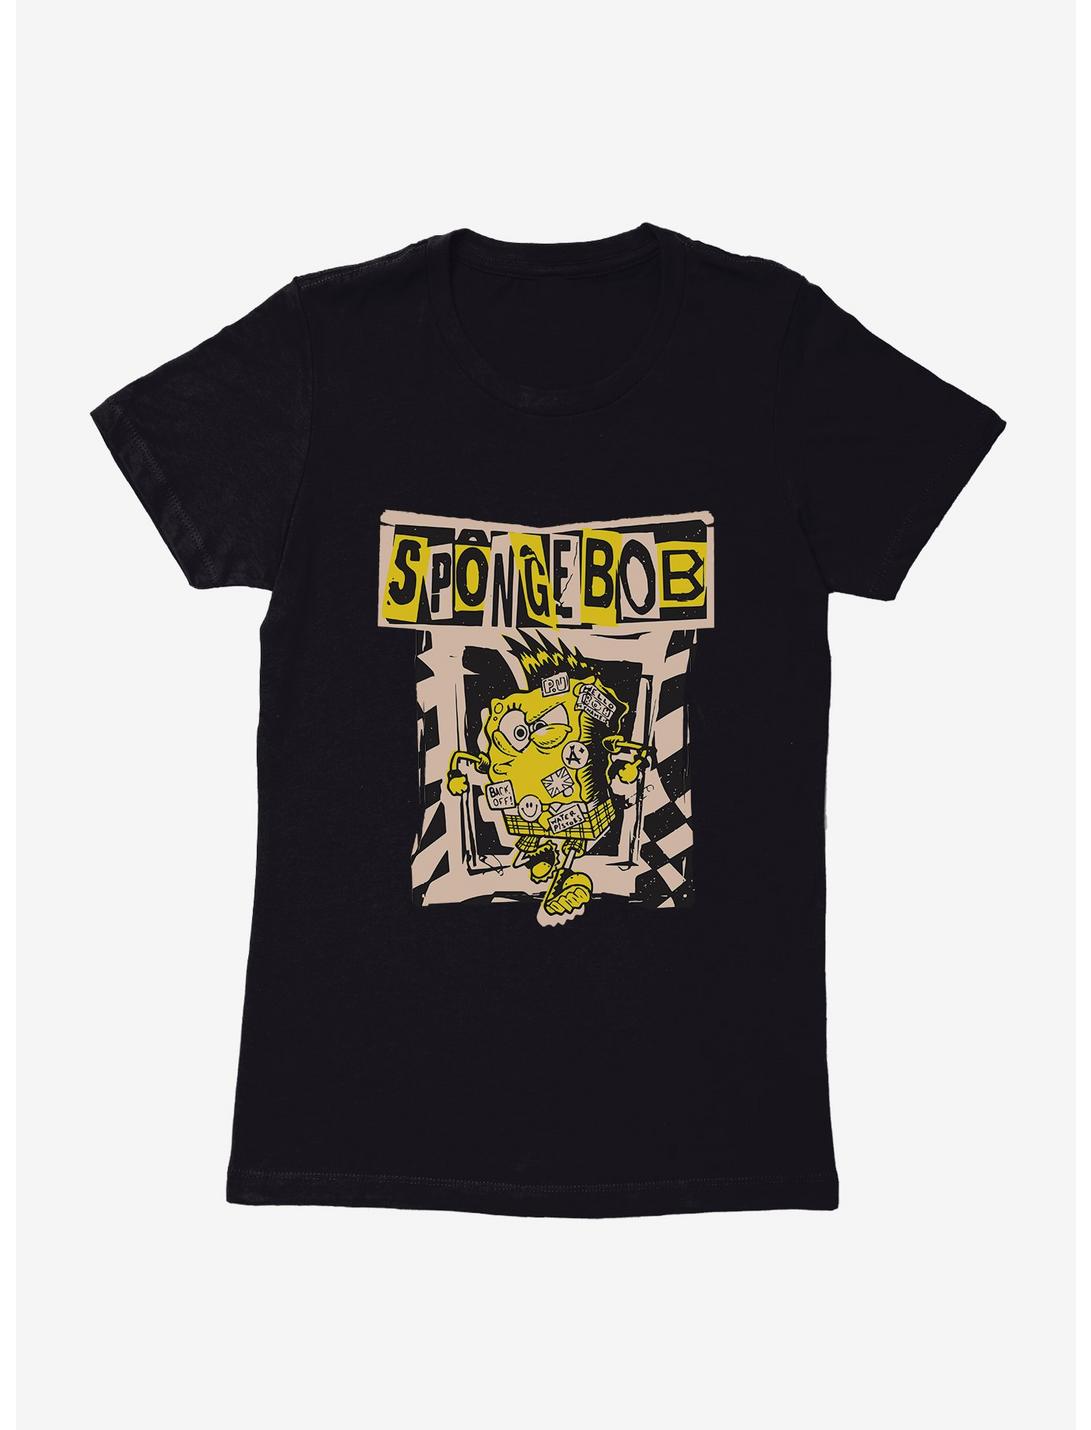 SpongeBob SquarePants Punk Attitude Womens T-Shirt, , hi-res